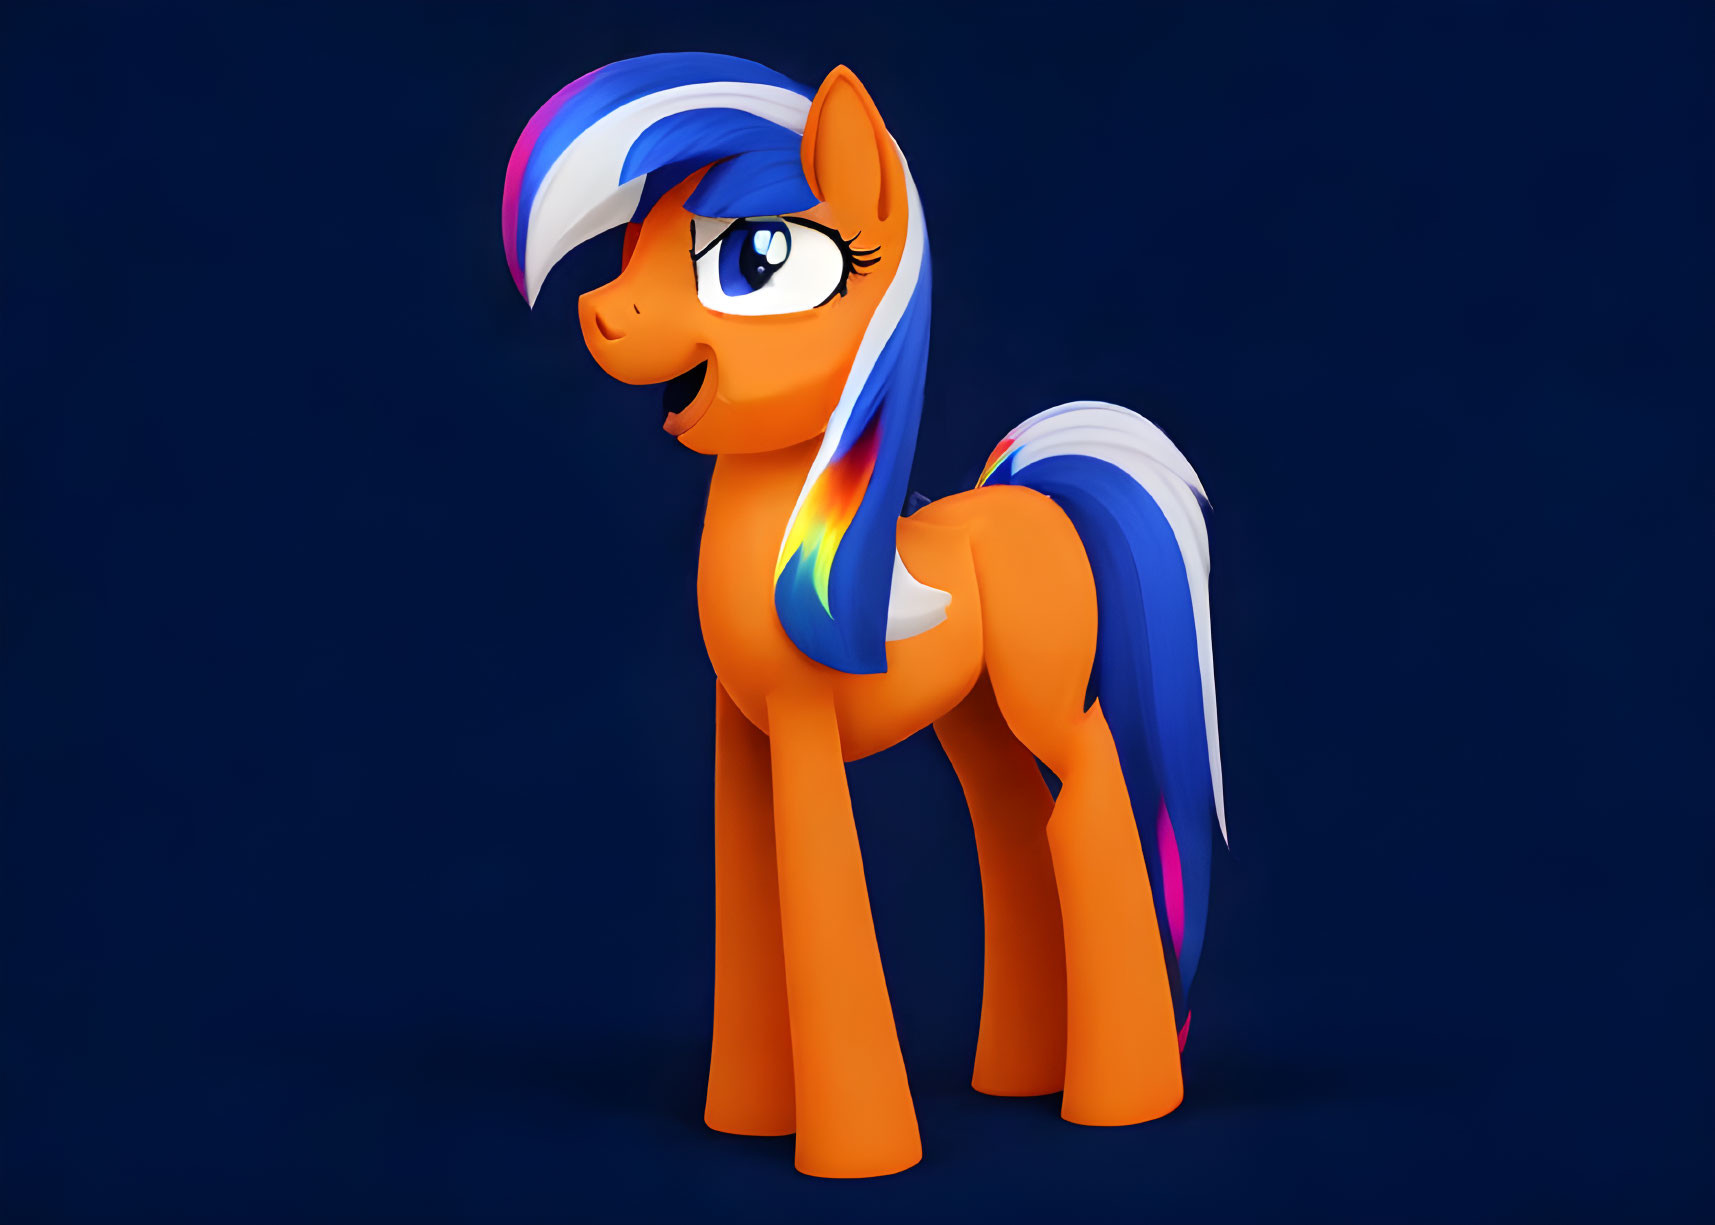 Colorful Animated Orange Pony with Rainbow Mane on Blue Background